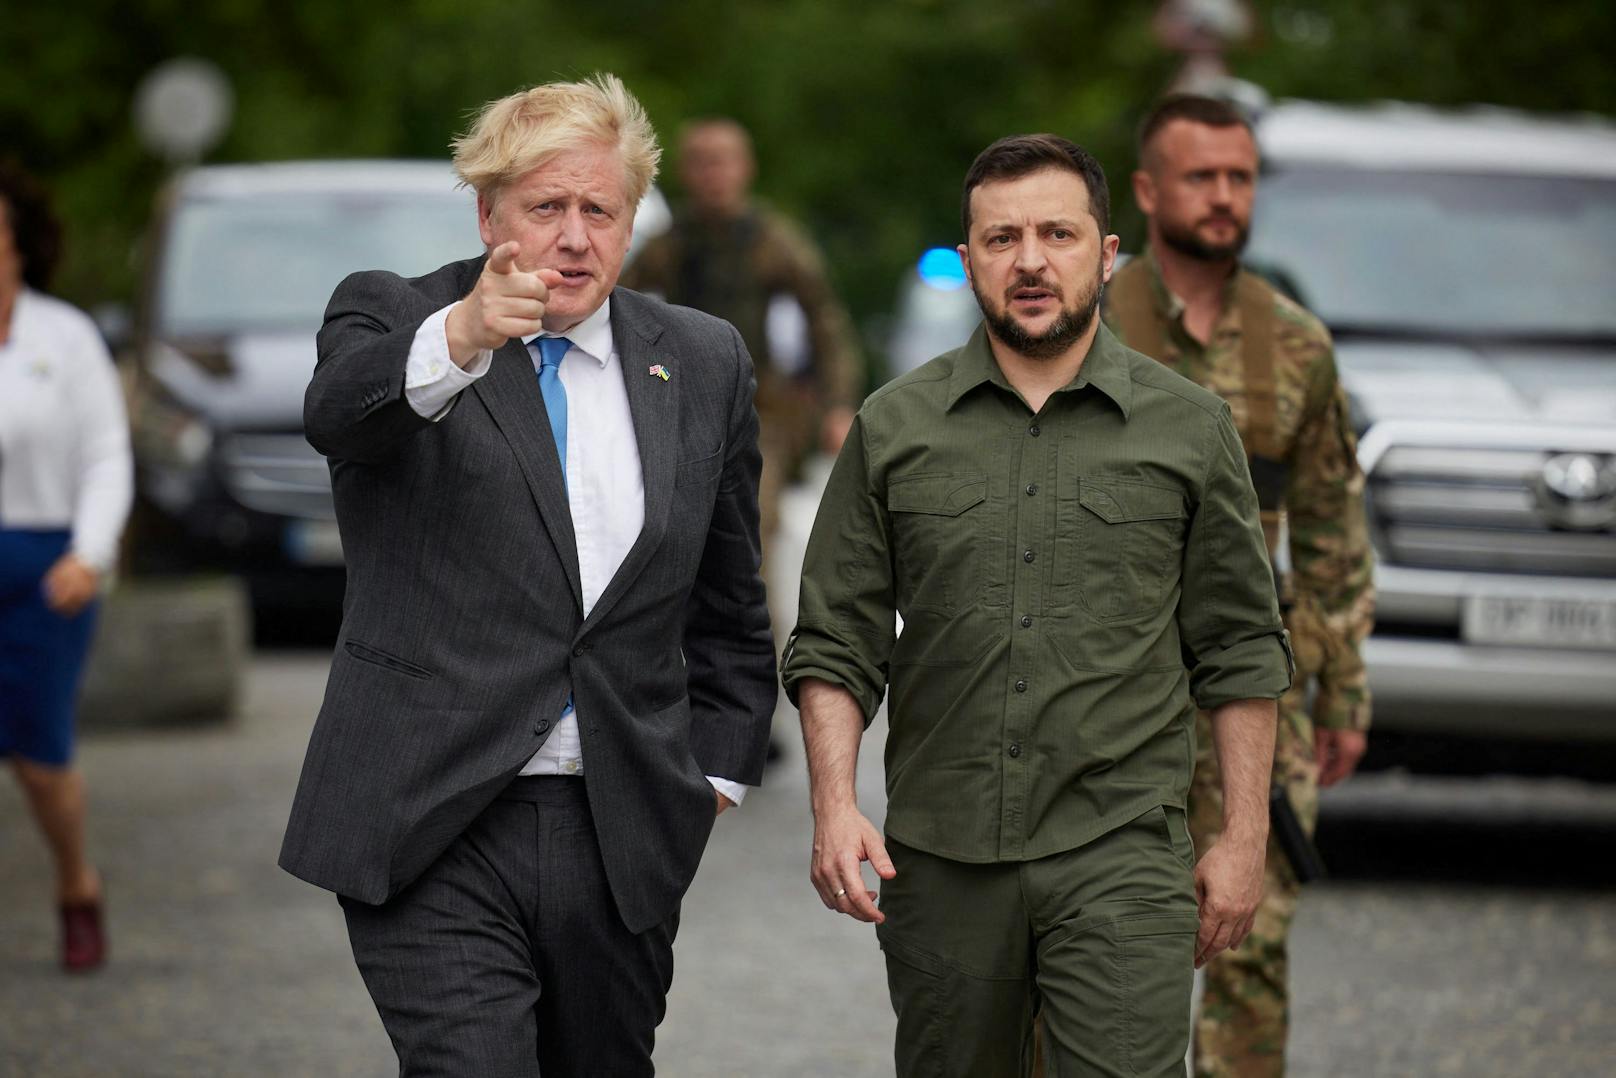 Briten-Premier Boris Johnson besuchte am 17. Juni 2022 überraschend den ukrainischen Präsidenten Wolodimir Selenski in Kiew.